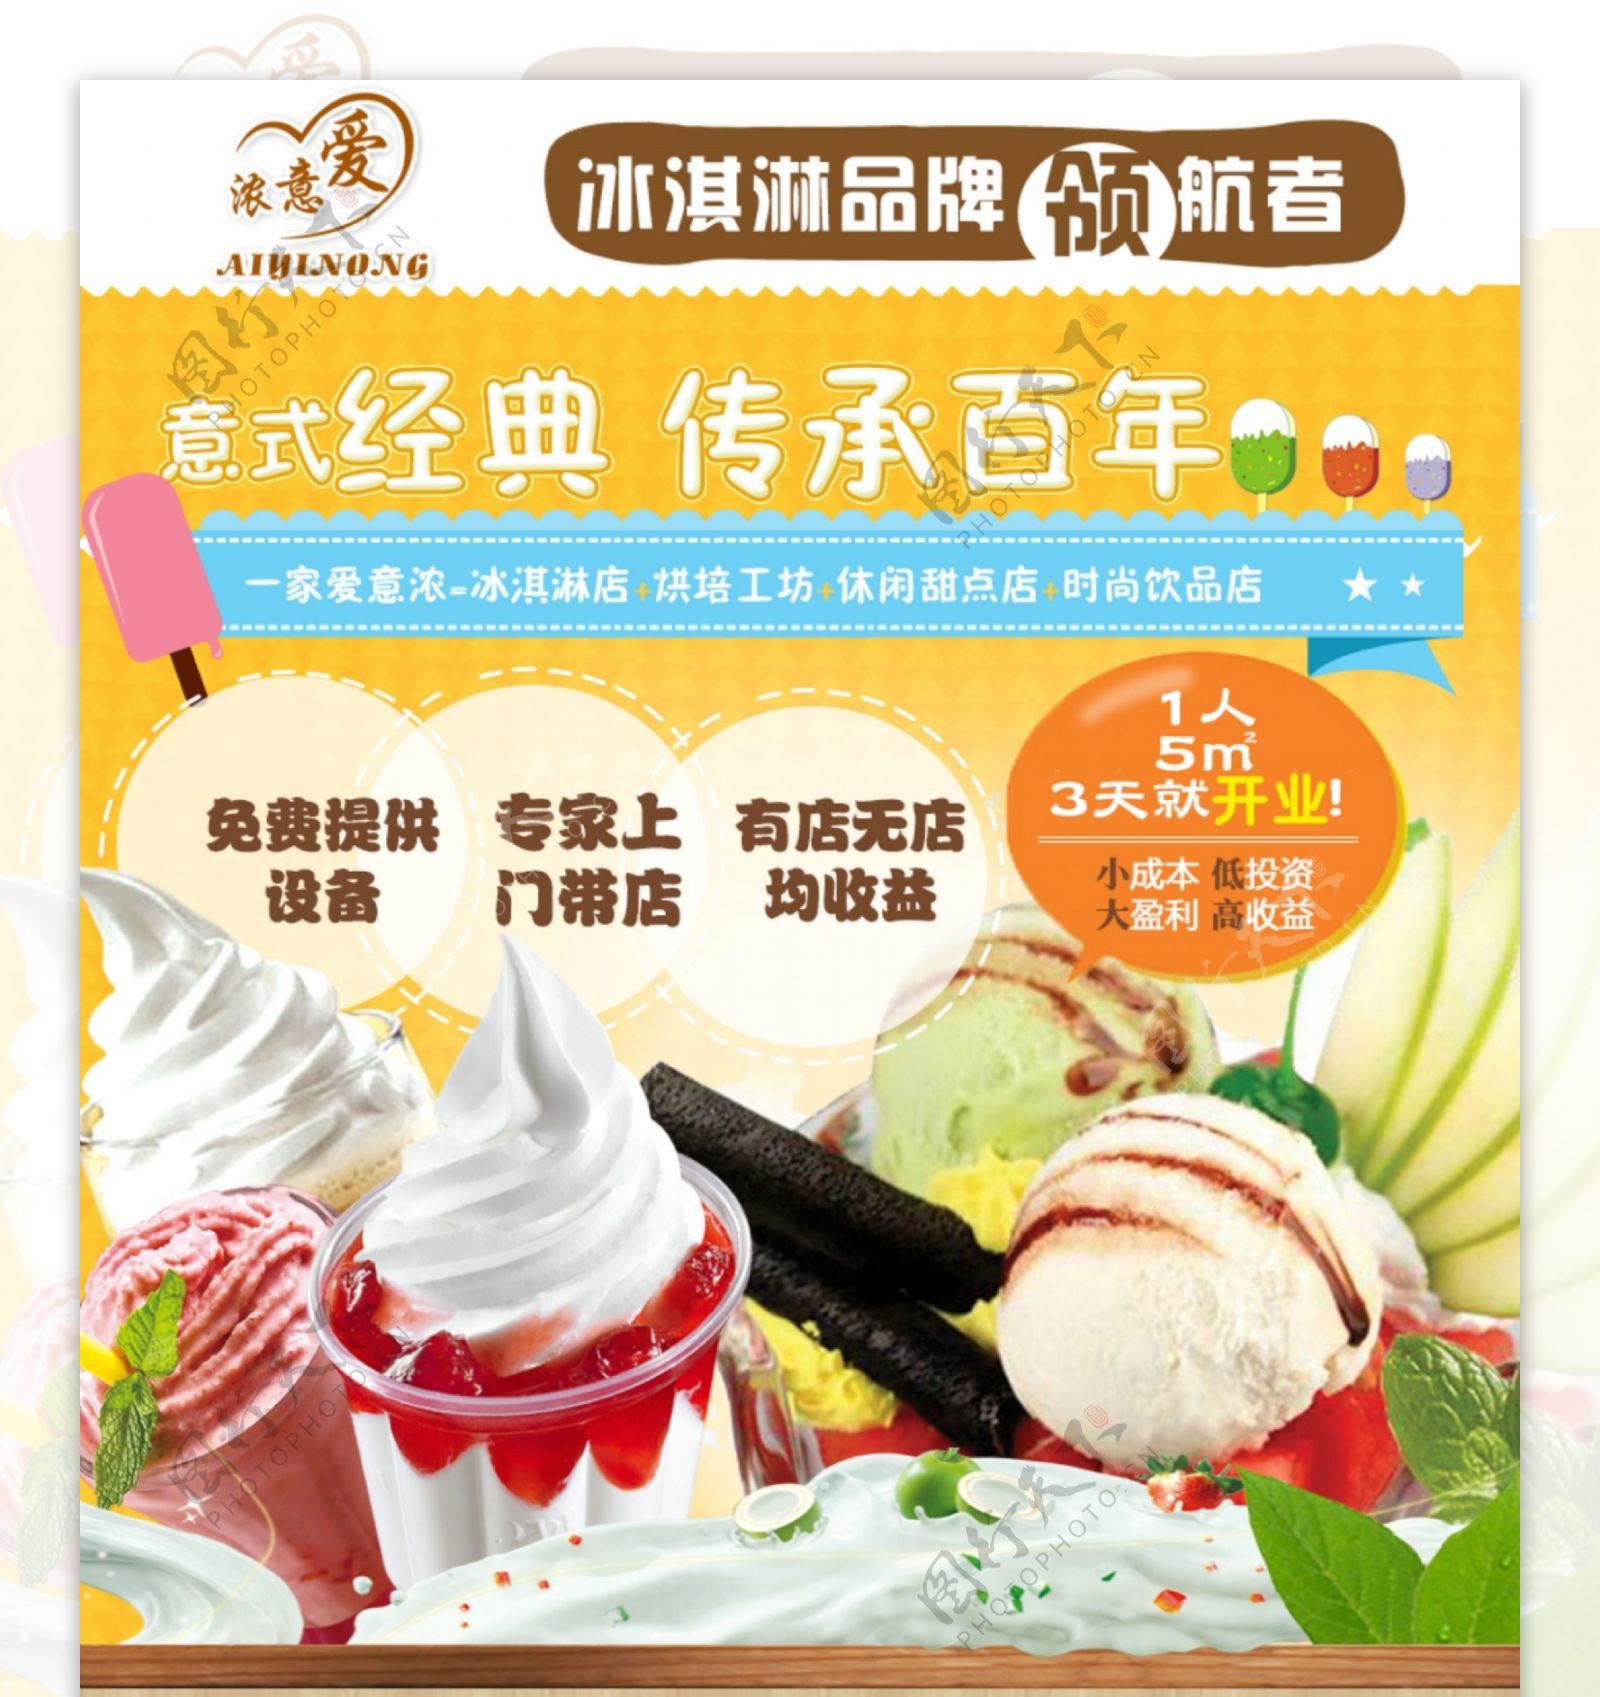 冰淇淋招商海报设计